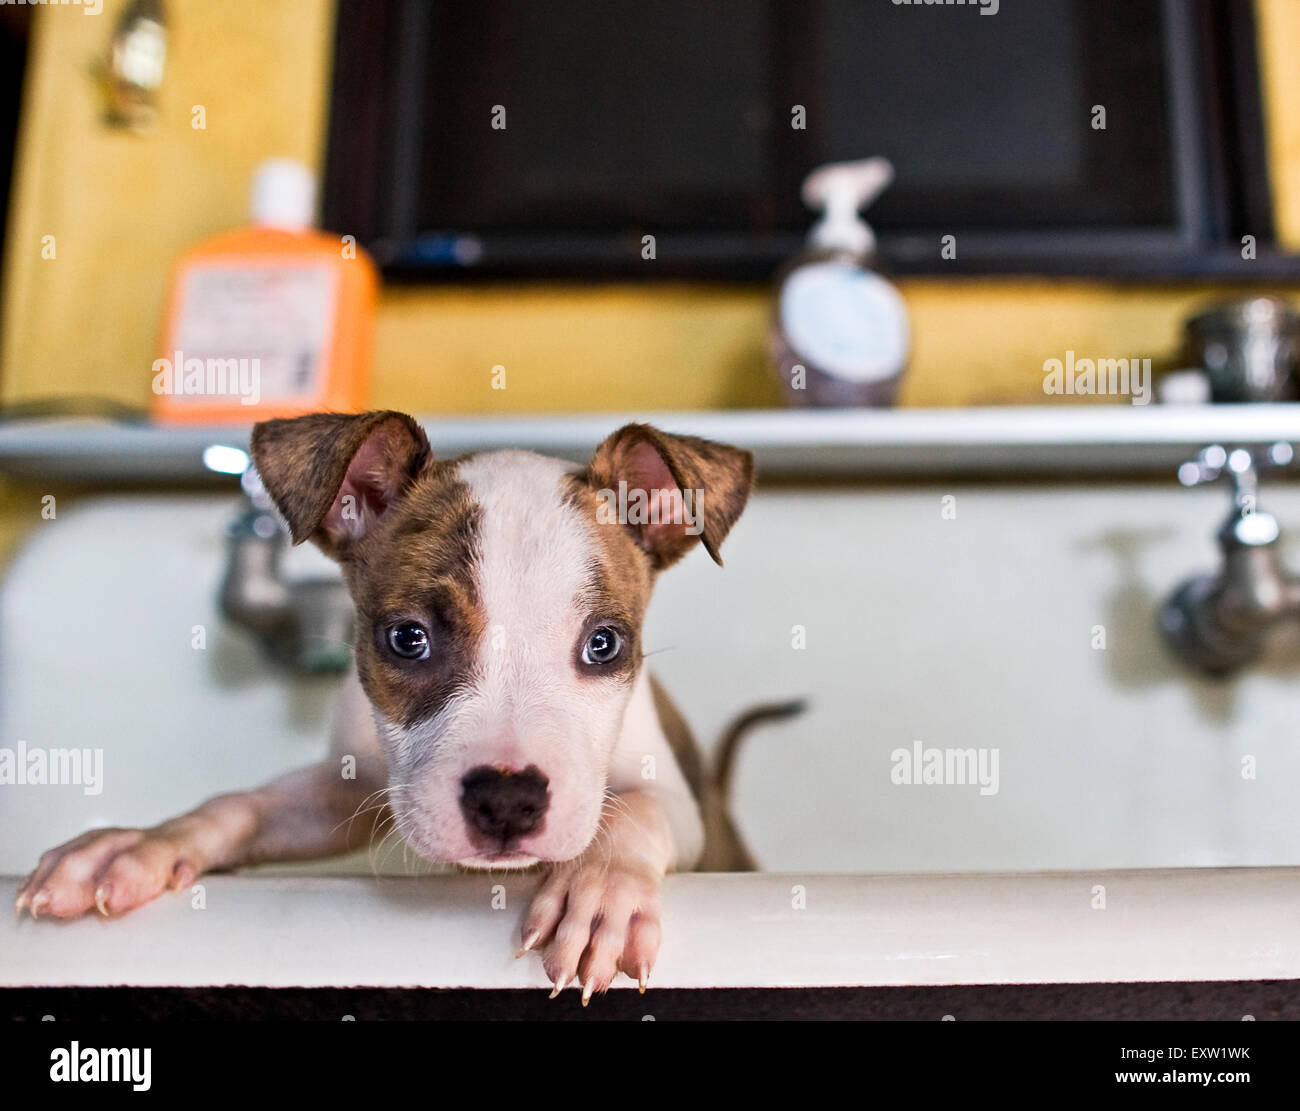 Marrone e bianco cucciolo con piedi anteriori sul lato del dissipatore grande dopo un bagno Foto Stock